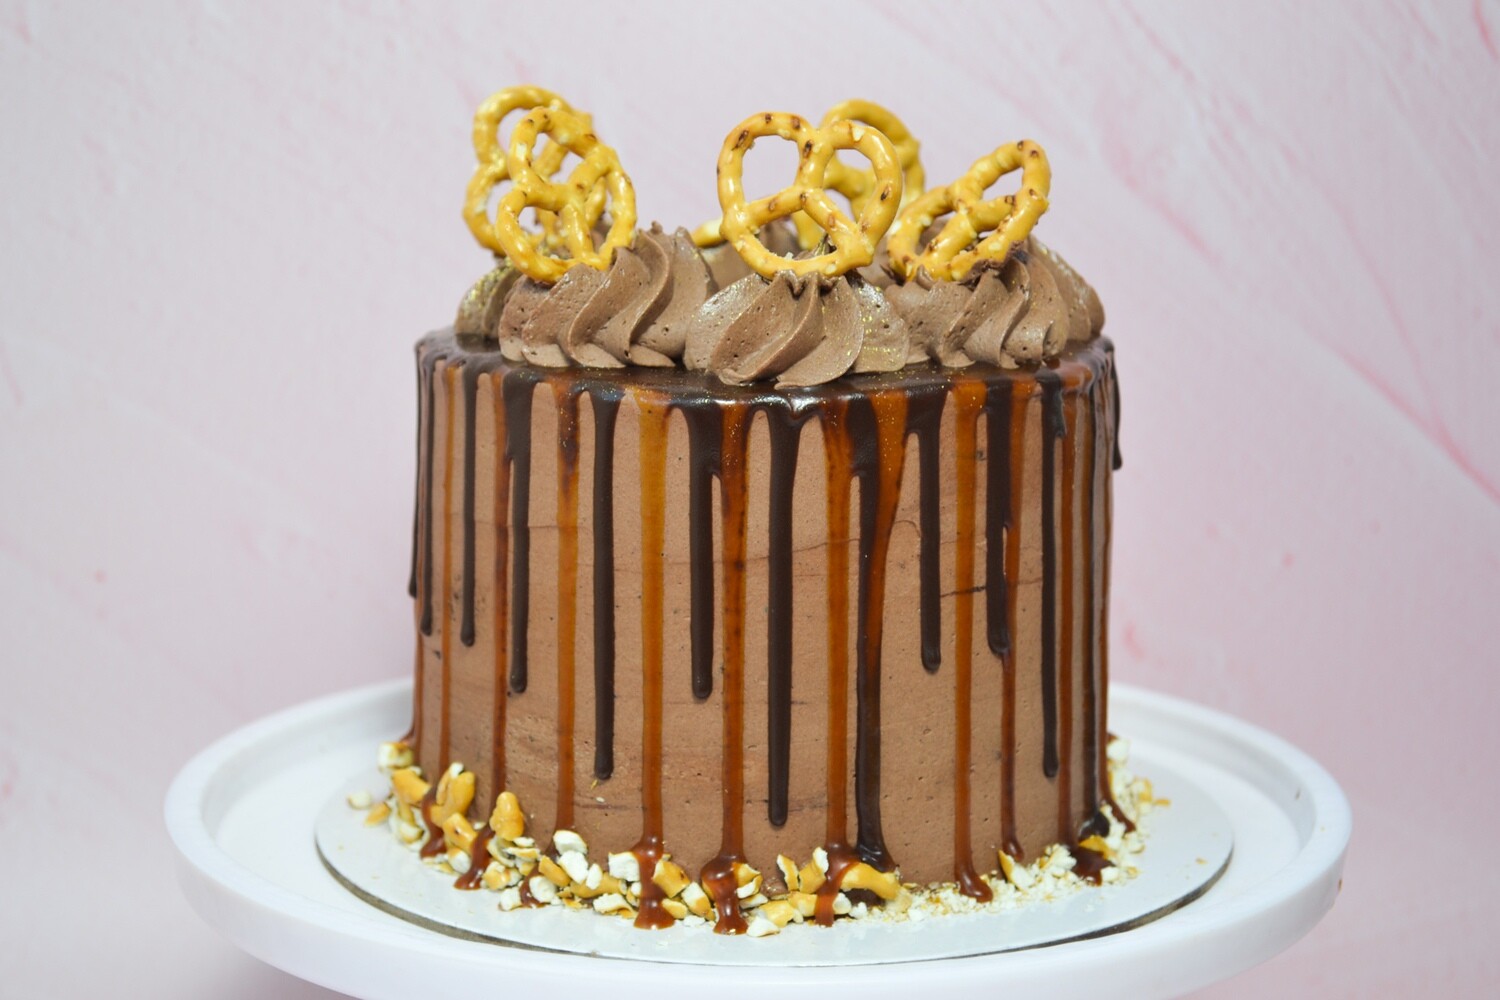 Chocolate caramel pretzel cake